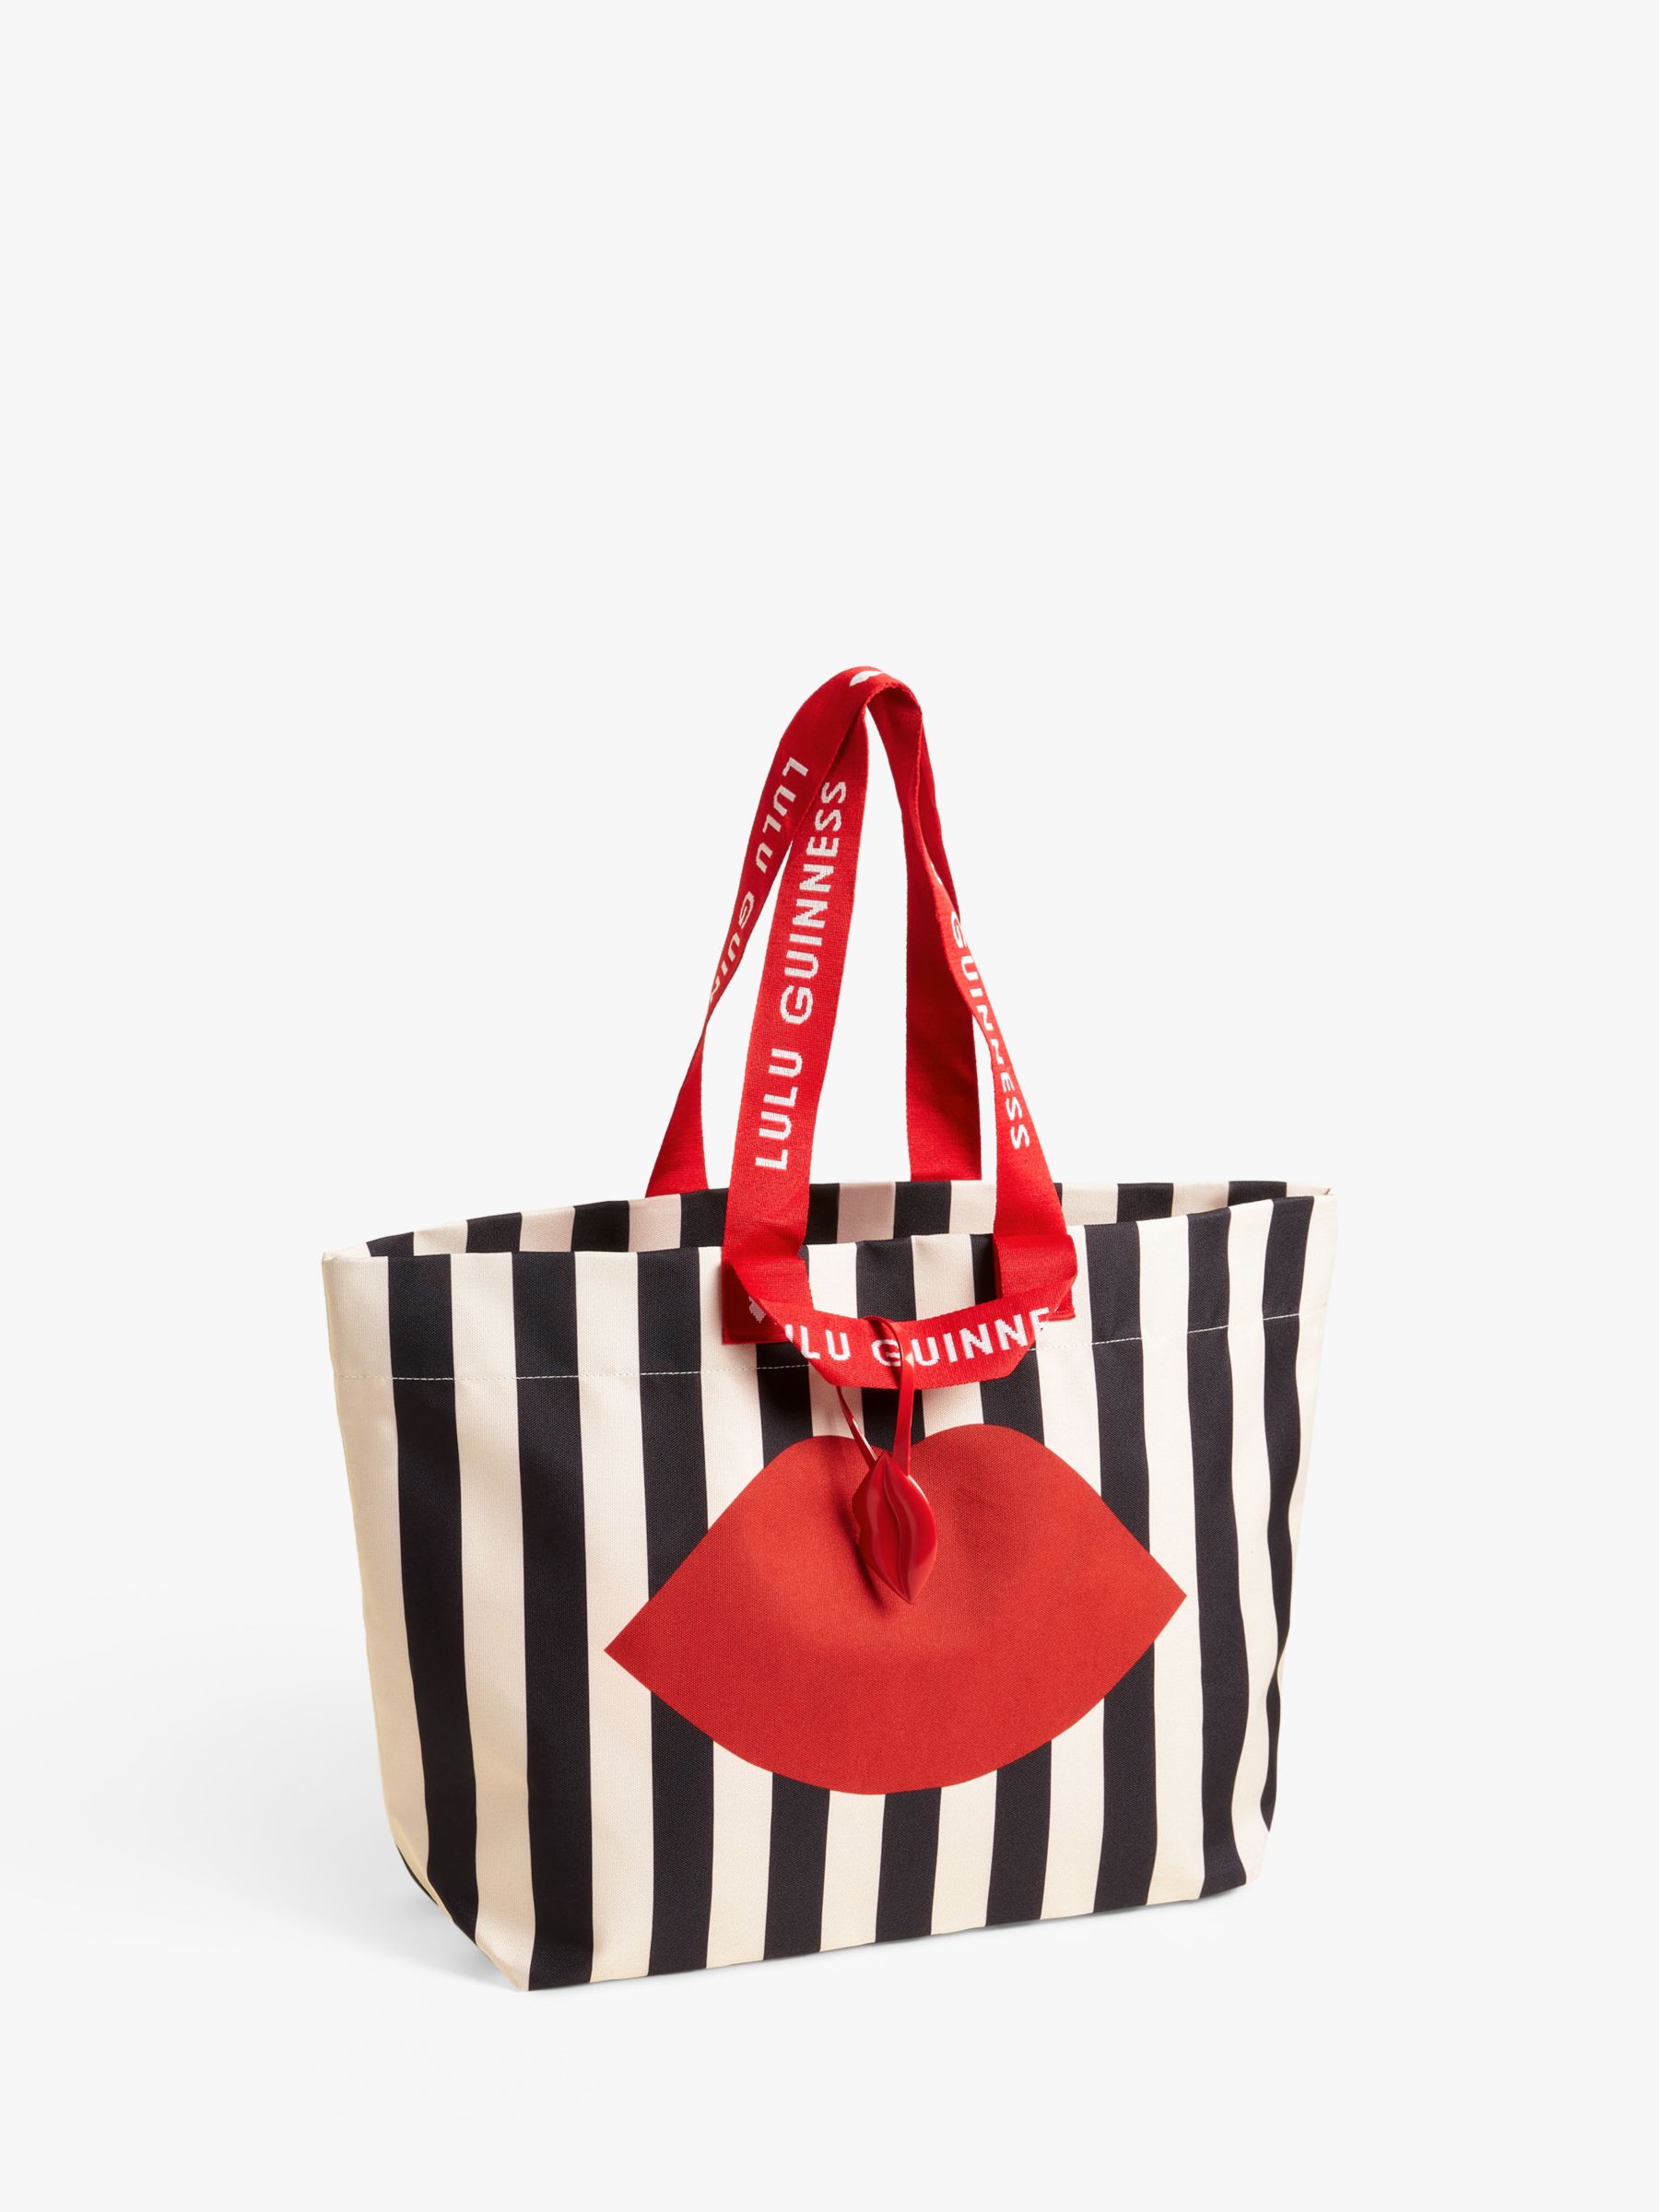 FREE with any purchase - Large Lululemon shopping bag